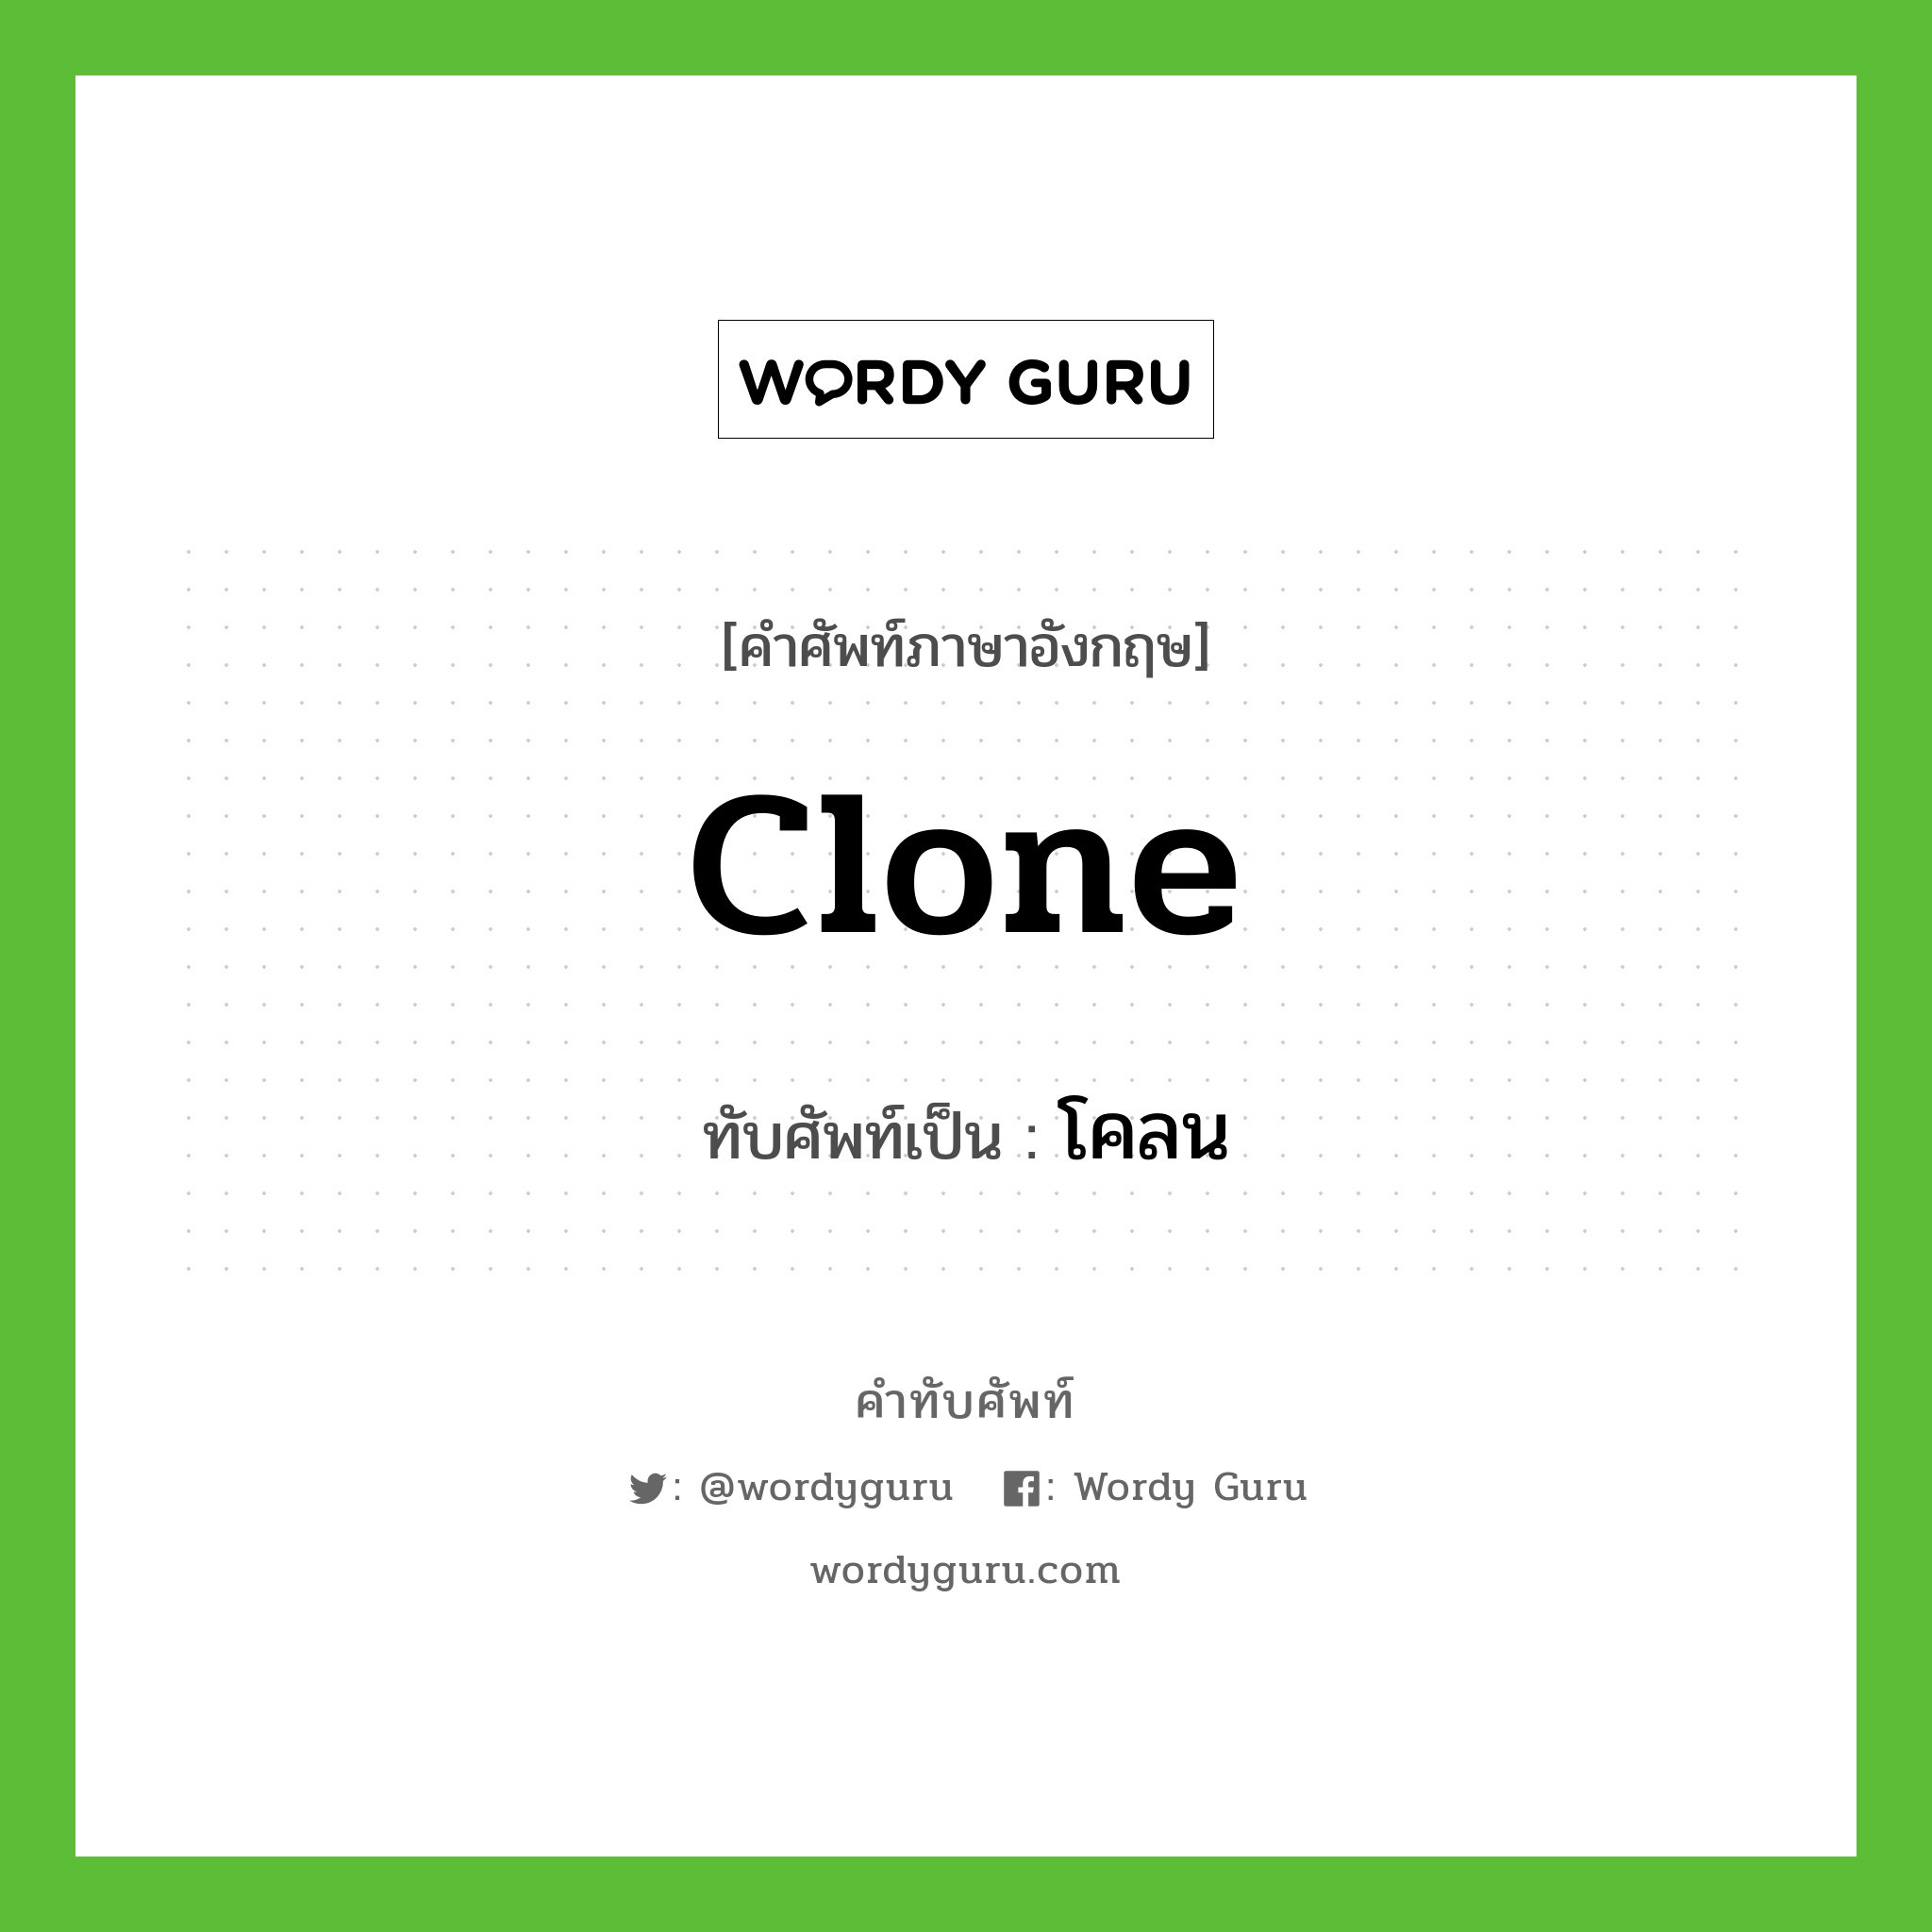 clone เขียนเป็นคำไทยว่าอะไร?, คำศัพท์ภาษาอังกฤษ clone ทับศัพท์เป็น โคลน